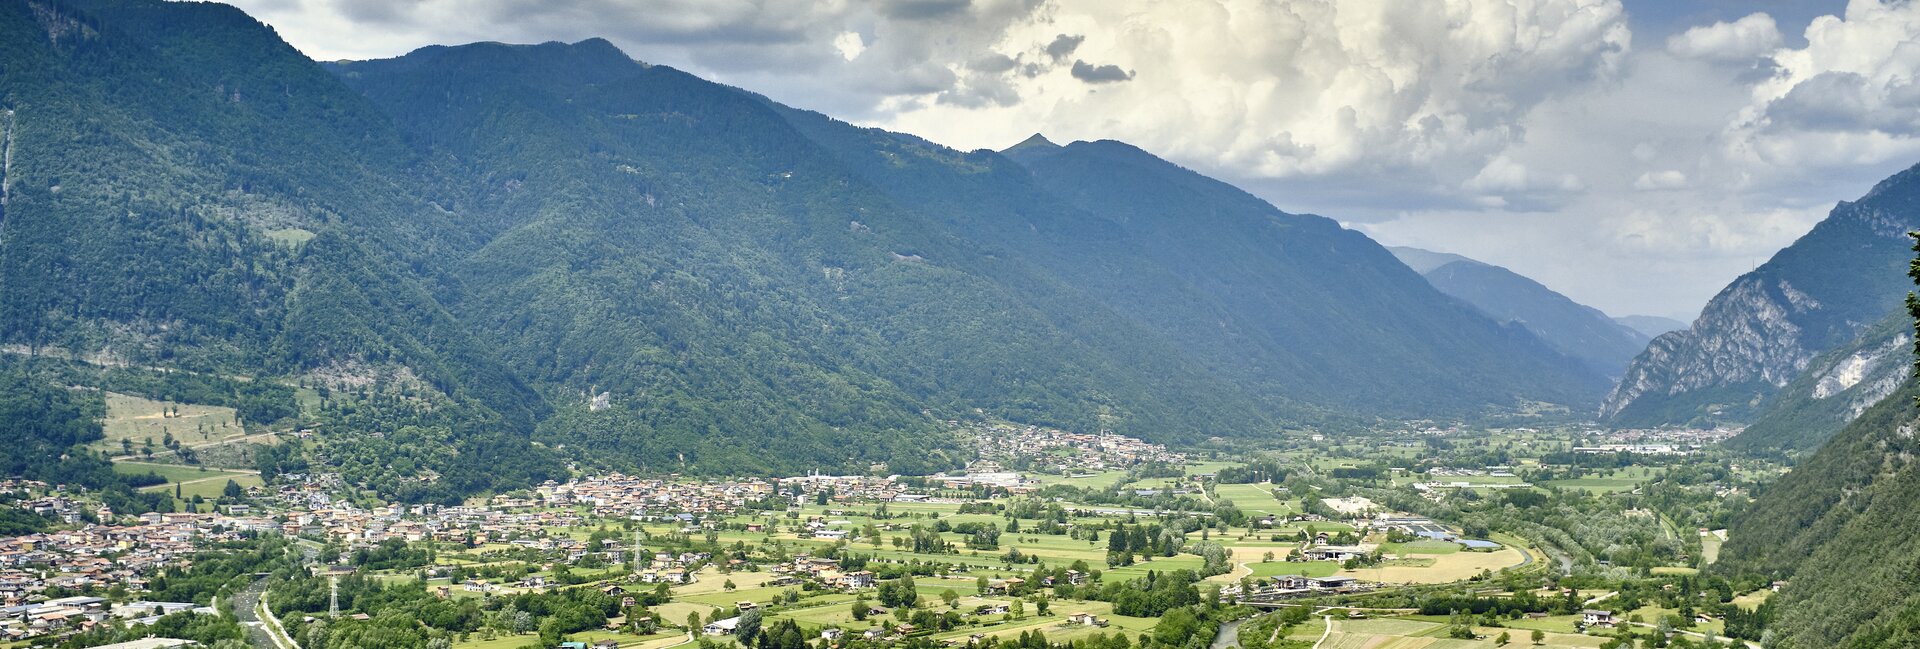 Valle del Chiese - Bondone - Baitoni
